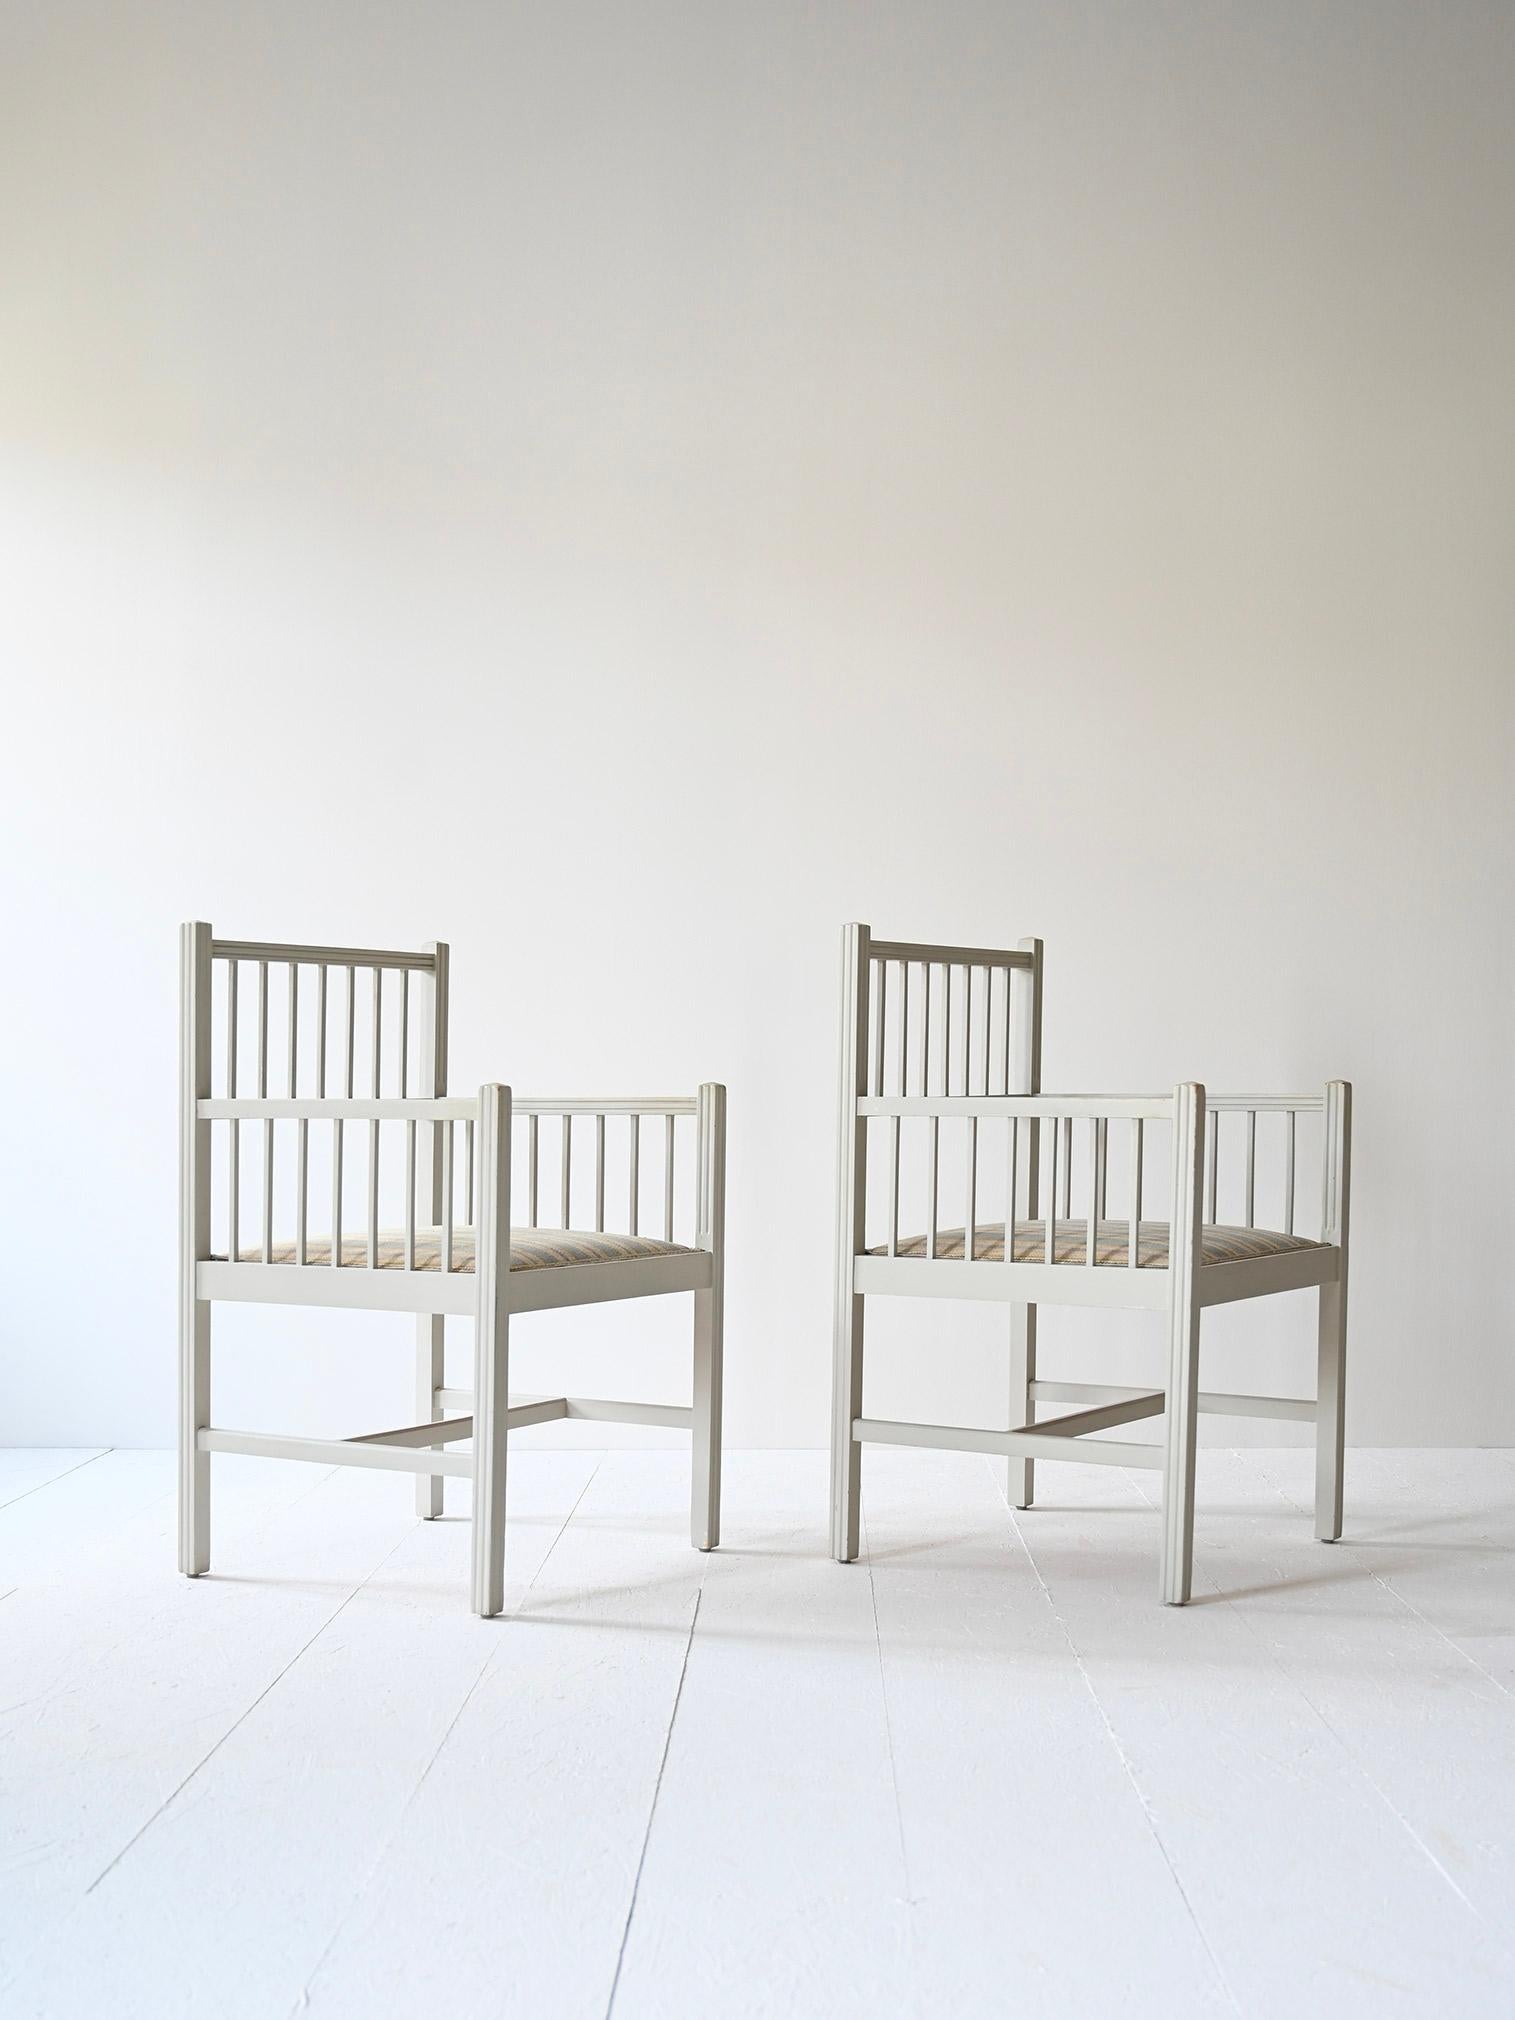 Paire de chaises de style Empire provenant de Suède.
Le cadre en bois est peint en blanc et l'assise est rembourrée et recouverte d'un tissu rayé d'époque.
Idéal pour la chambre ou le hall d'entrée afin de donner un aspect raffiné et unique à la